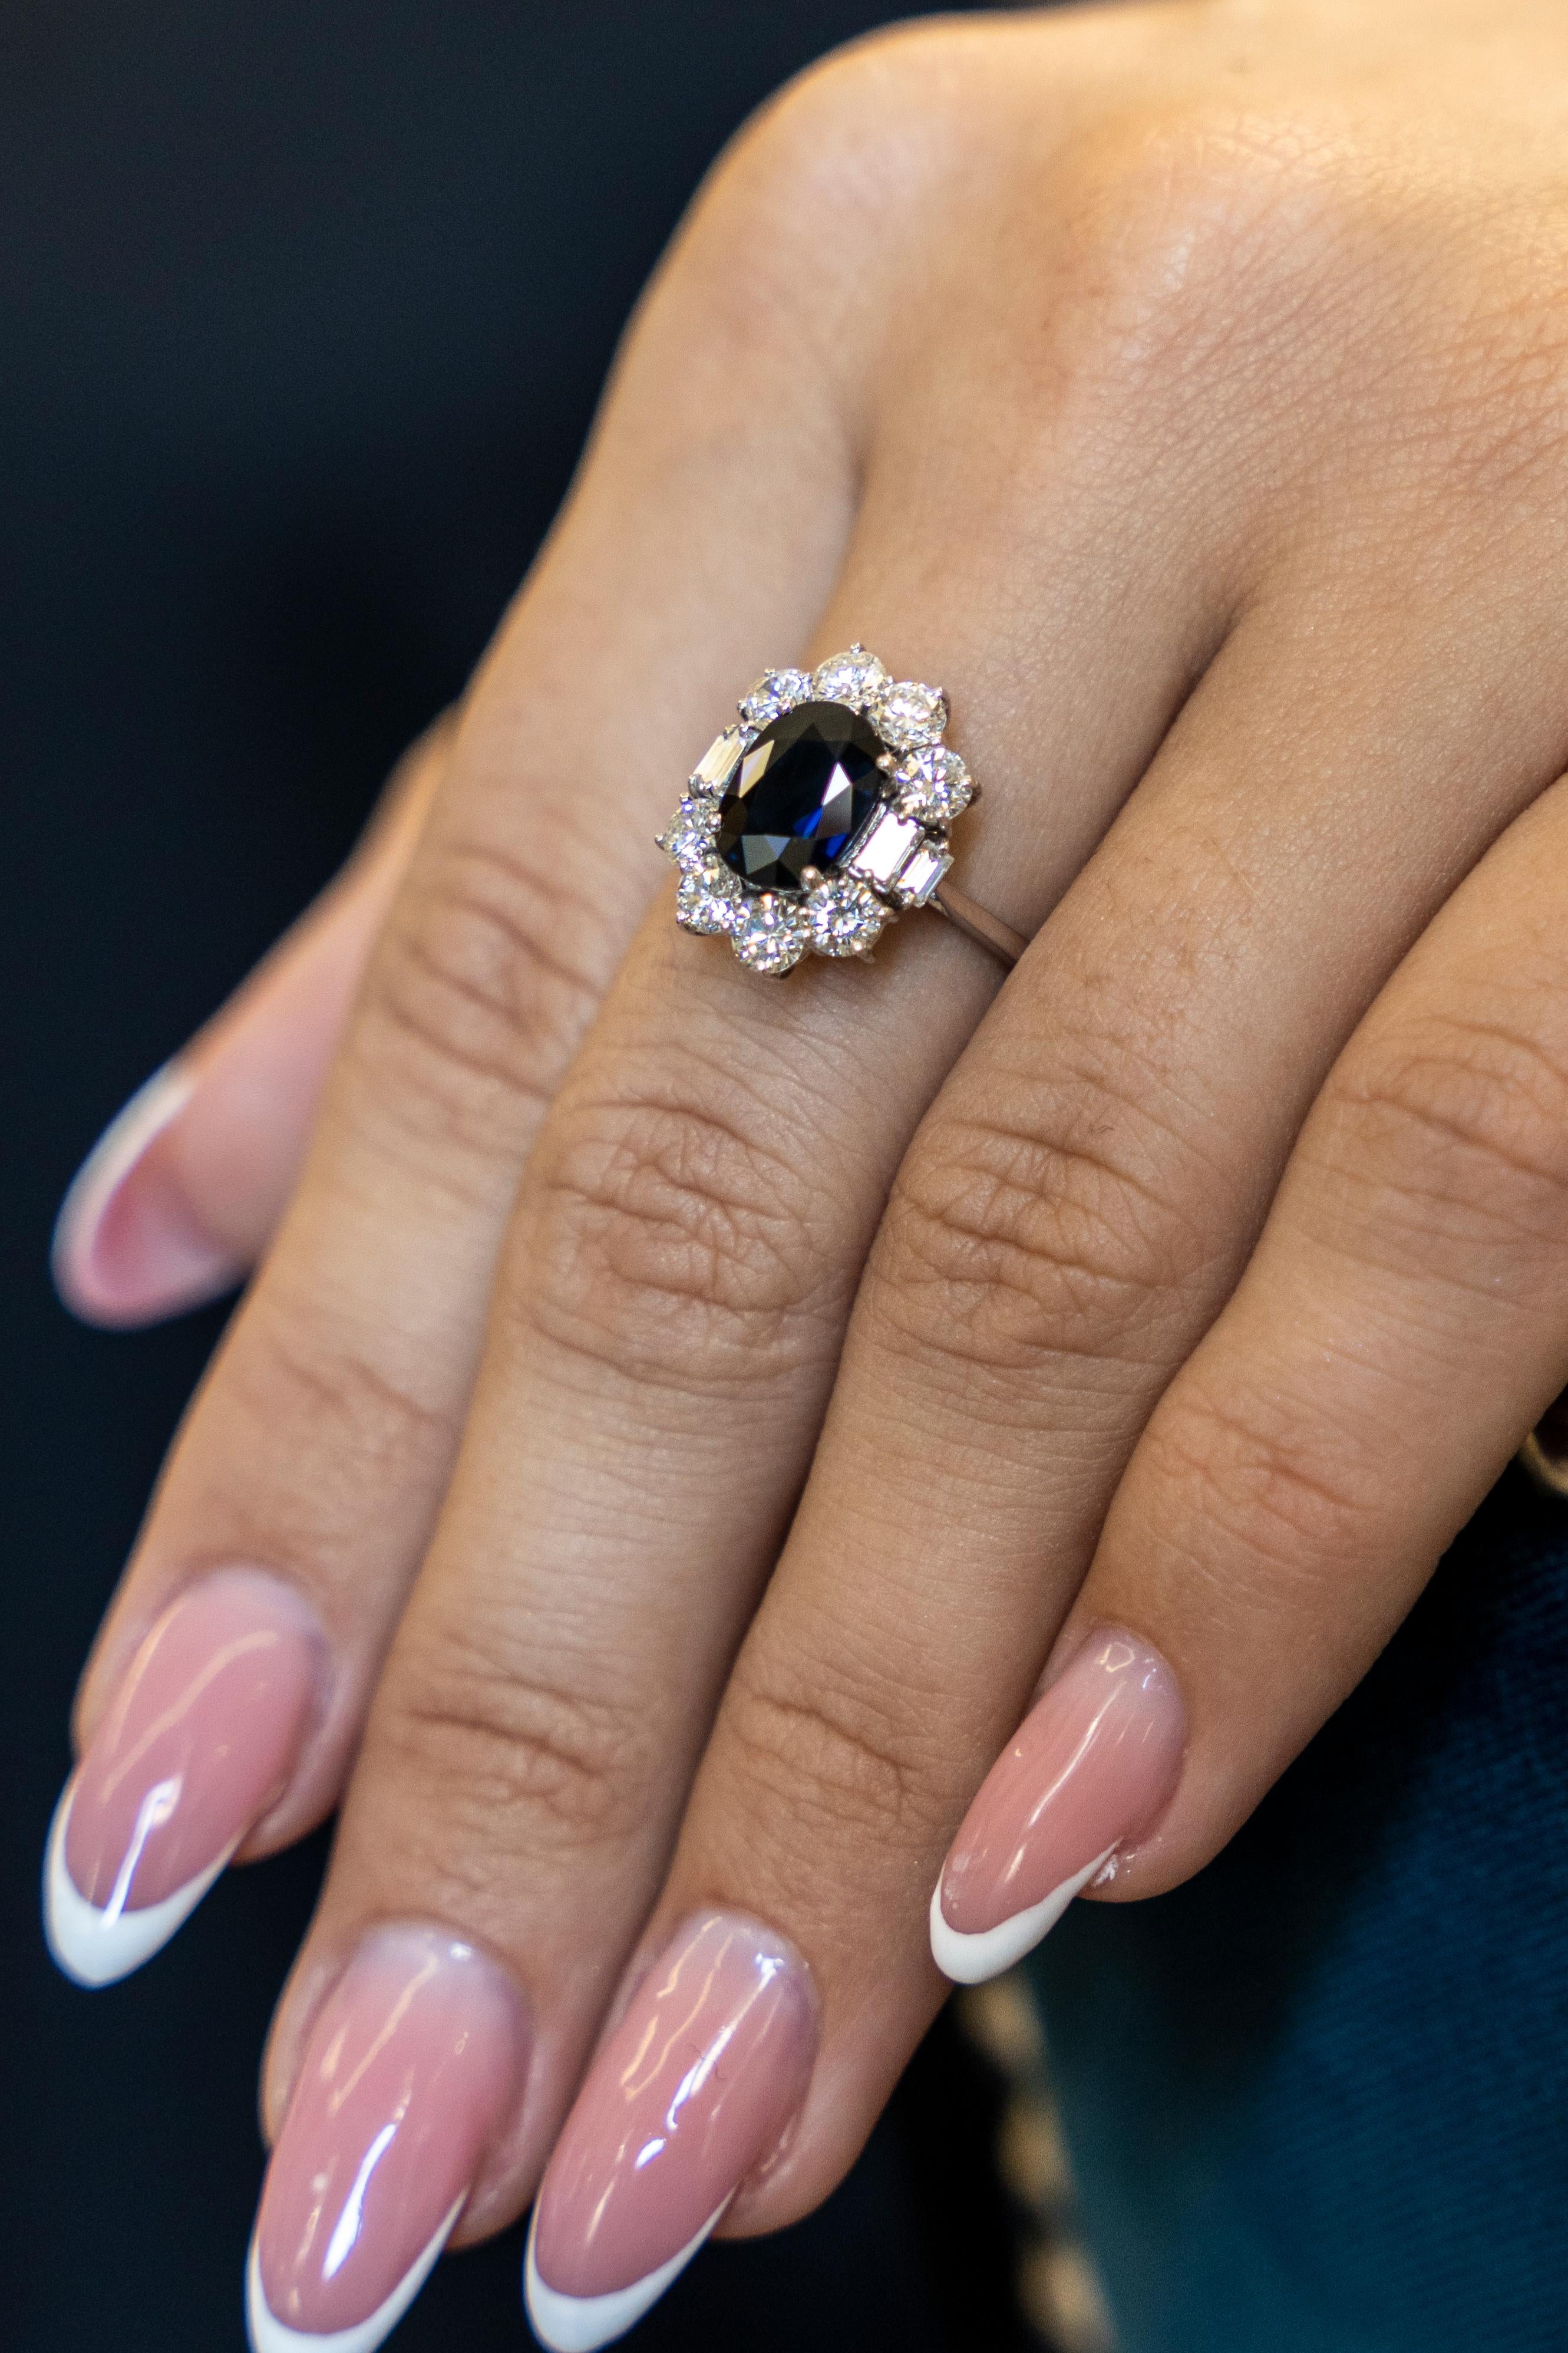 Dieser elegante Ring aus 18 Karat Weißgold ist aus unserer Timeless Collection'S. Er besteht aus einem ovalen Saphir von 2,18 Karat, verziert mit 10 farblosen Diamanten von insgesamt 1,51 Karat. Das Gesamtgewicht des Metalls beträgt 4.7 g. Ein